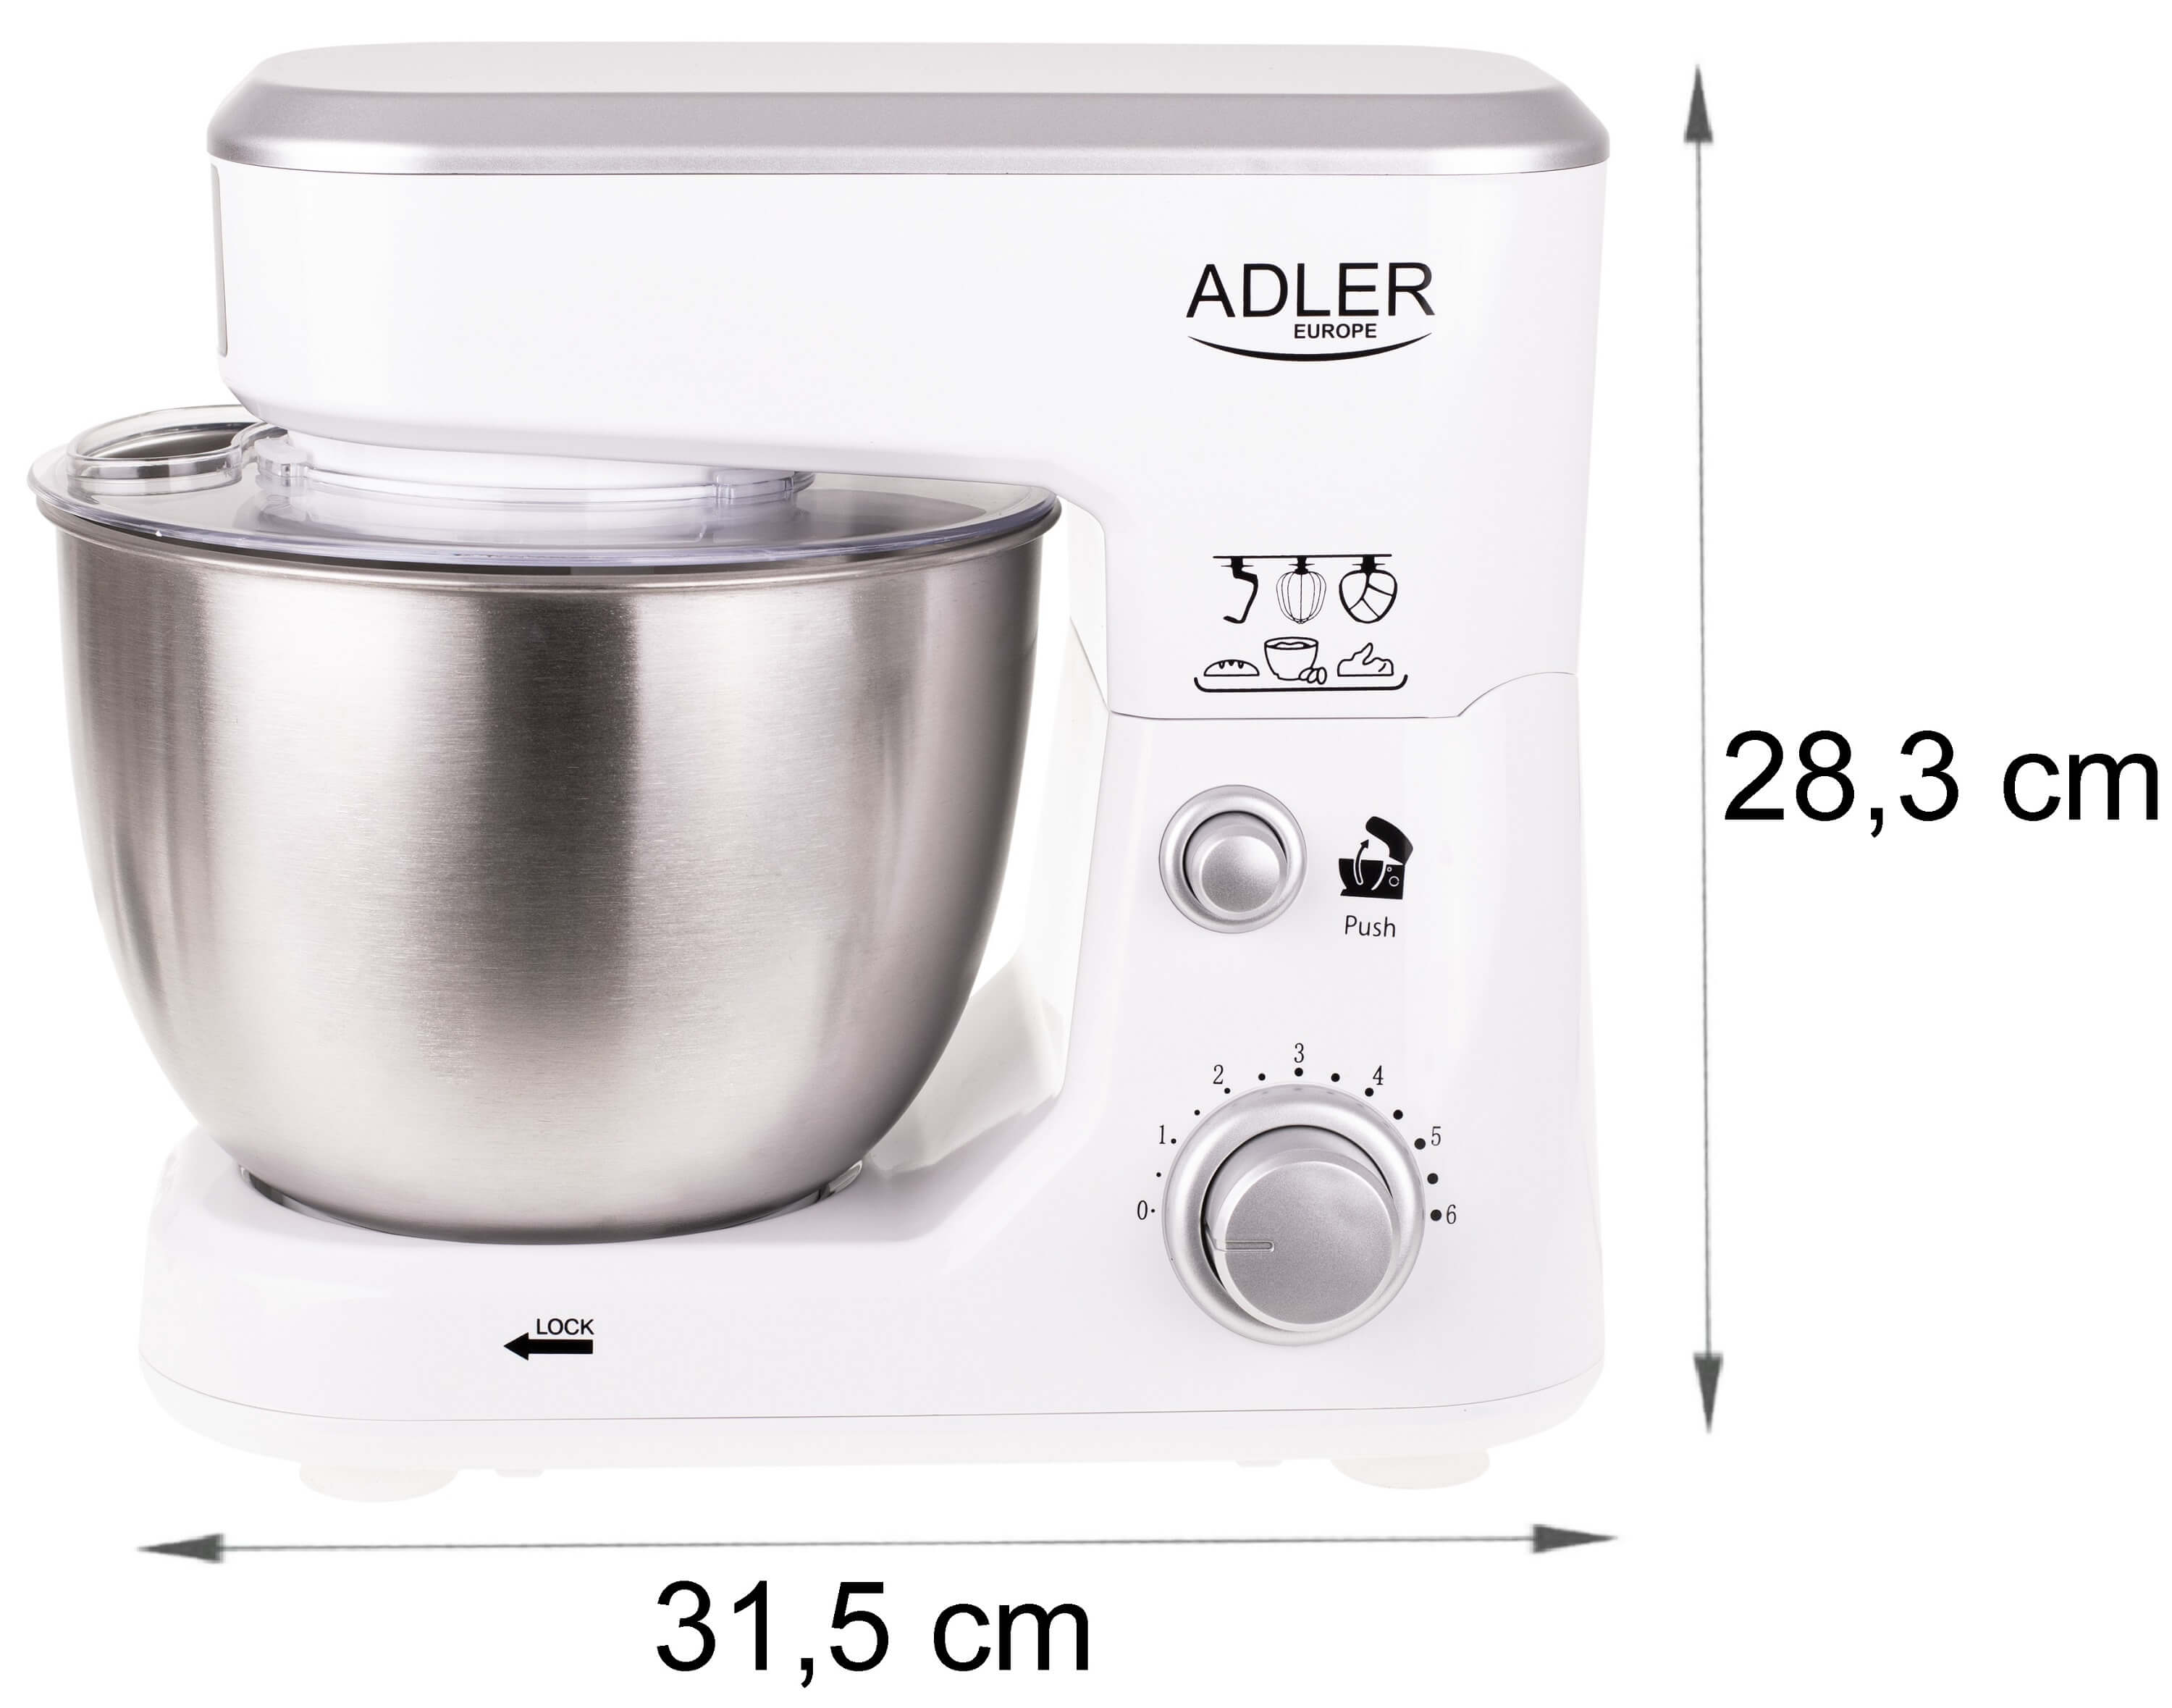 ADLER EUROPE AD-4216 1000 Liter, Küchenmaschine Watt) (Rührschüsselkapazität: 4 Weiß